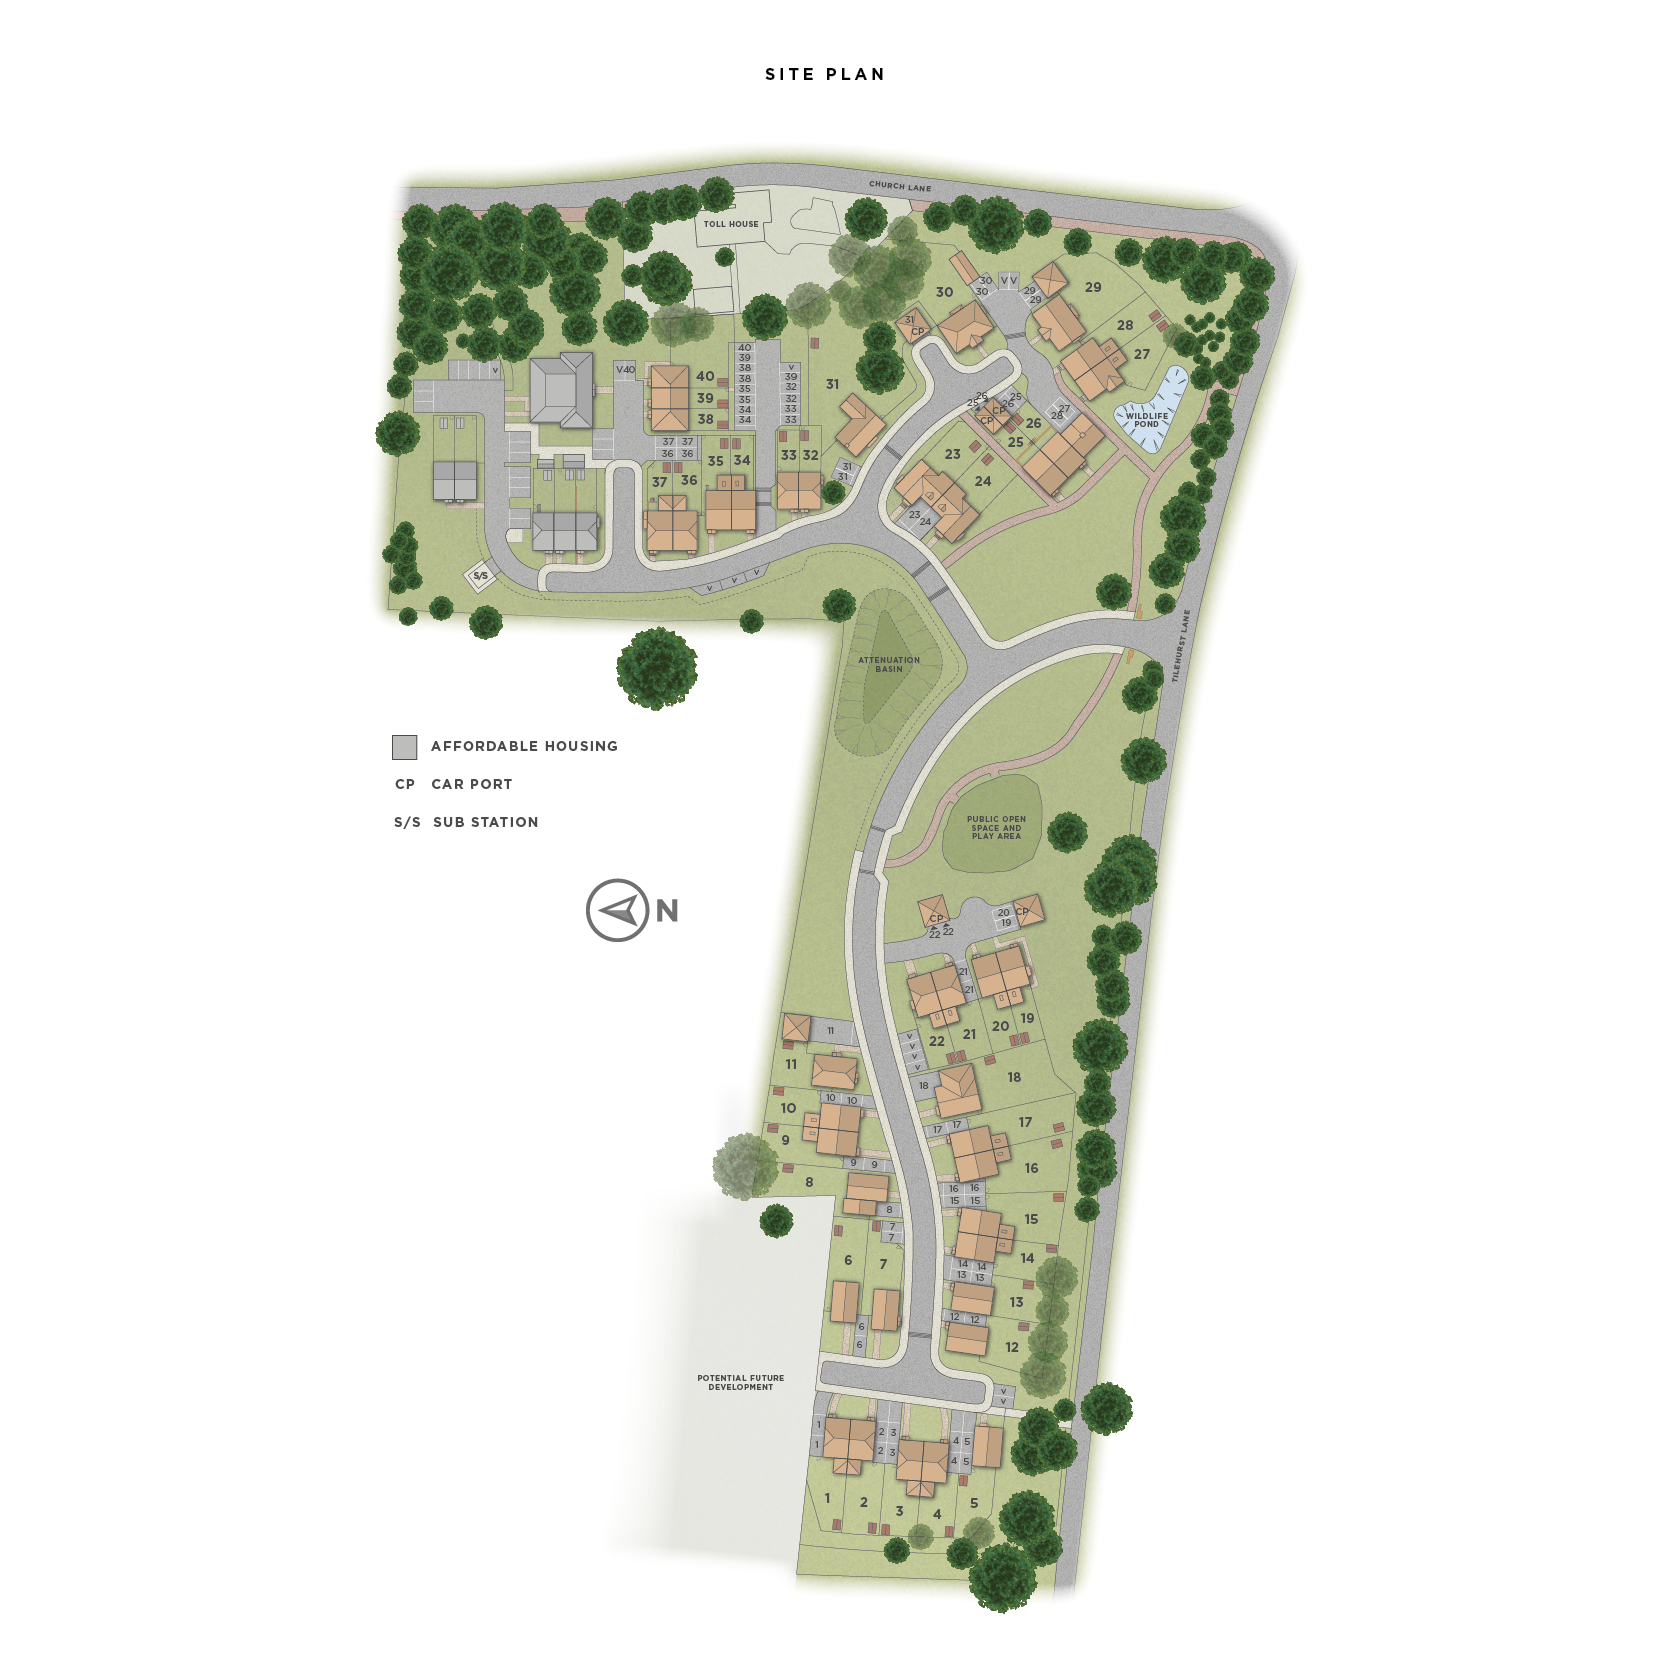 Tilehurst Green site plan